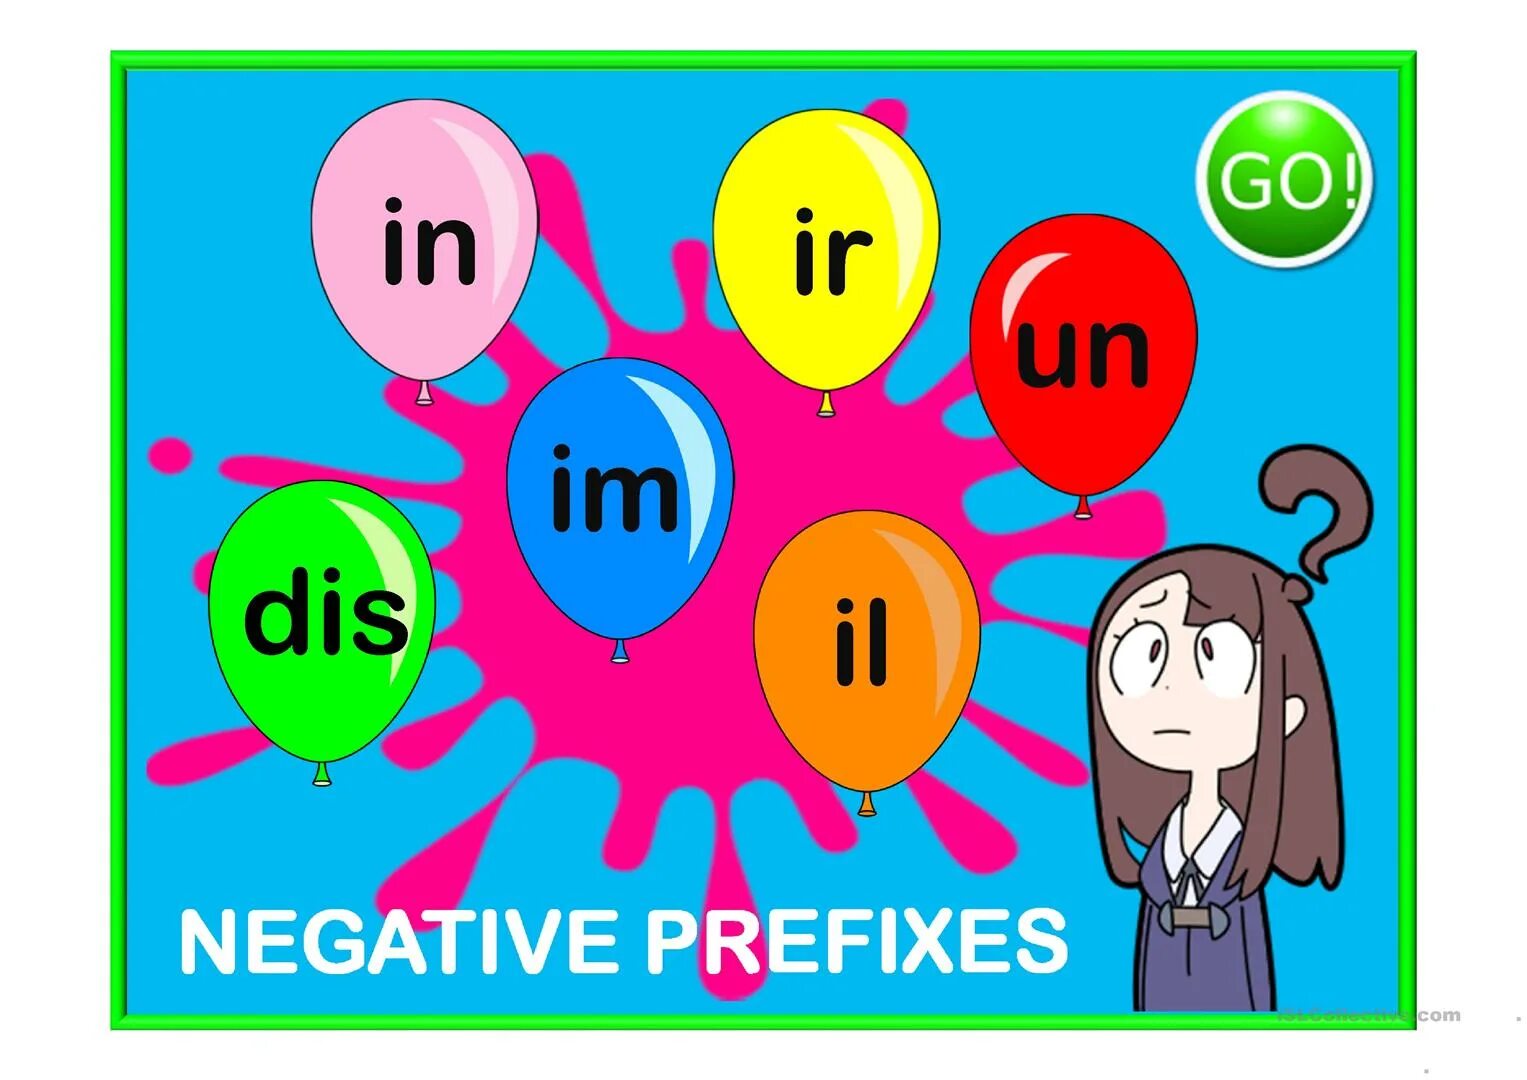 Prefixes im in il. Negative prefixes. Negative prefixes un, dis, in, im, ir. Negative prefixes правило. Negative prefixes - отрицательные приставки.